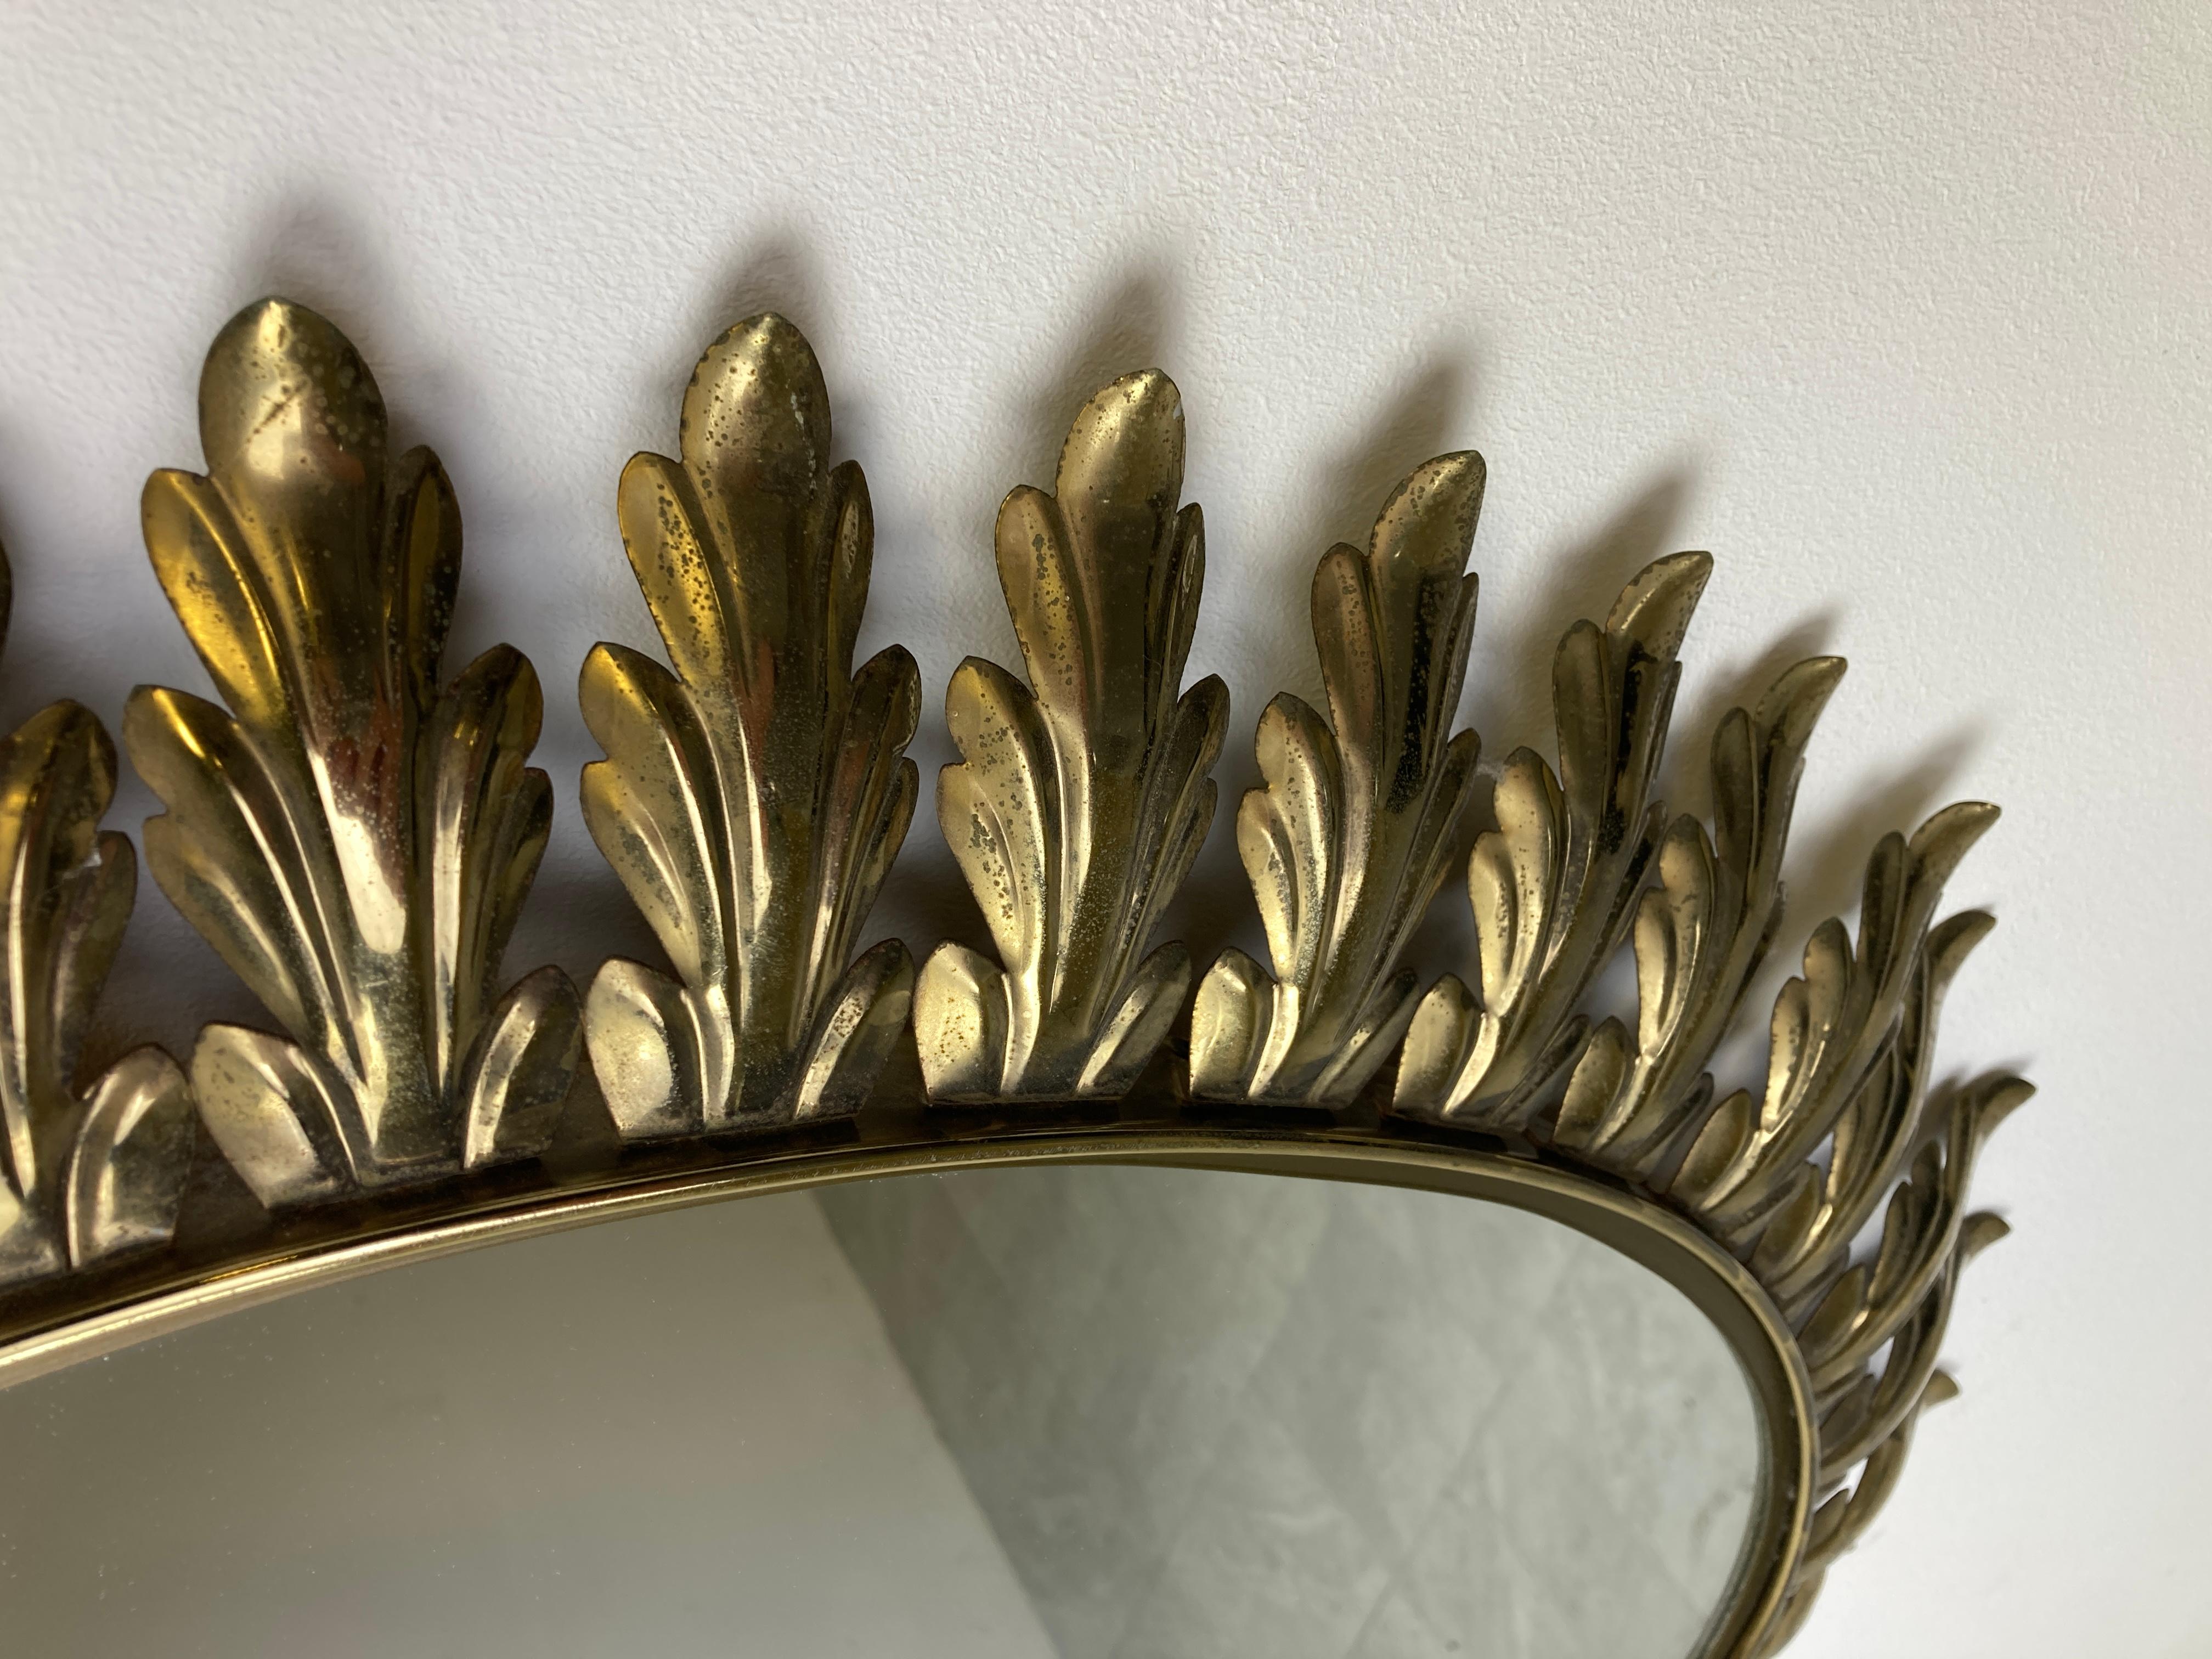 Messingspiegel aus der Mitte des Jahrhunderts mit Messingblättern und einem ovalen Spiegelglas.

Dieser Spiegel passt in die meisten Innenräume und ist eine perfekte Ergänzung für eine Einrichtung im Regency-Stil.

Guter Zustand.

Frankreich -